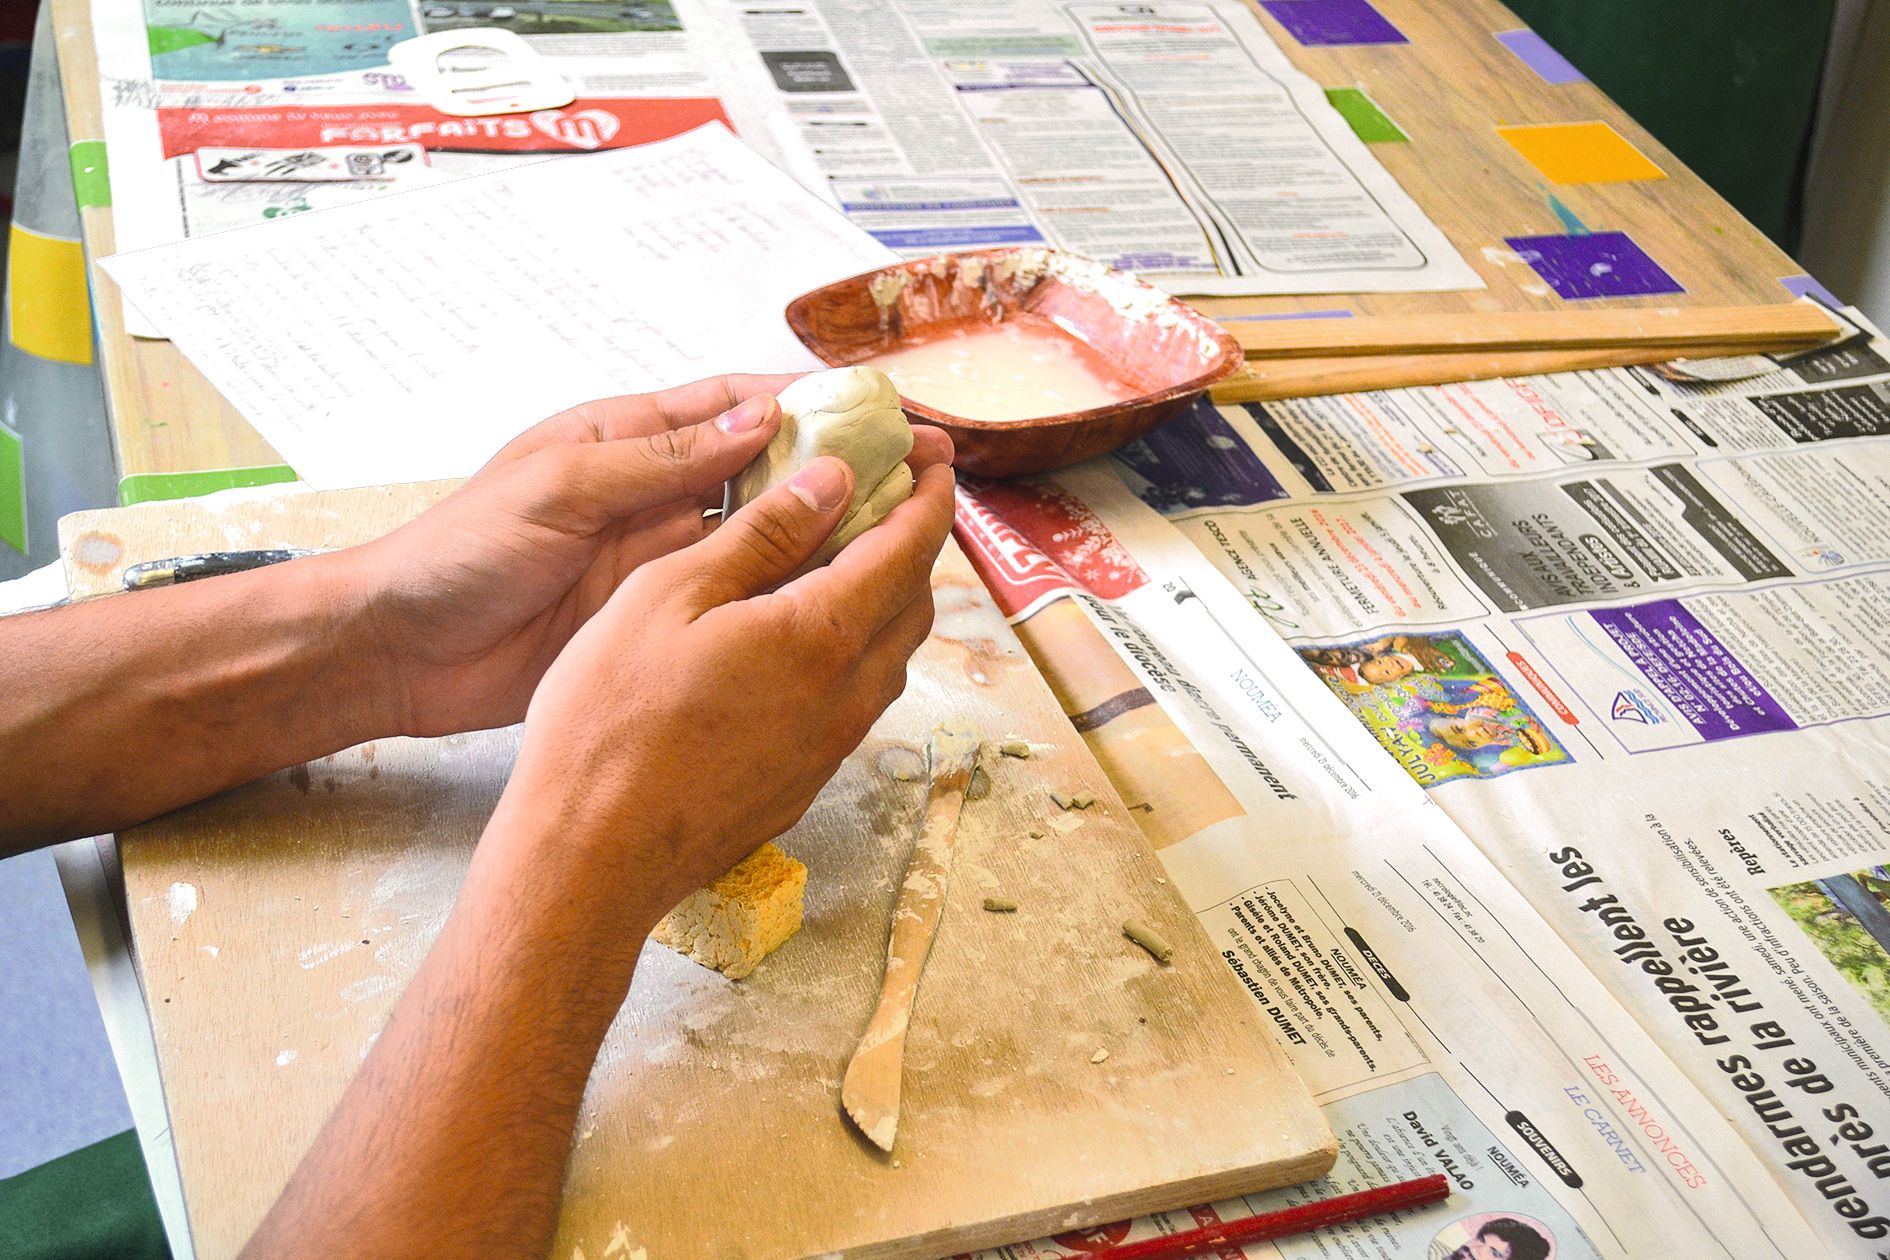 À l’atelier poterie, les participants apprennent notamment à suivre les différentes étapes de la fiche technique.